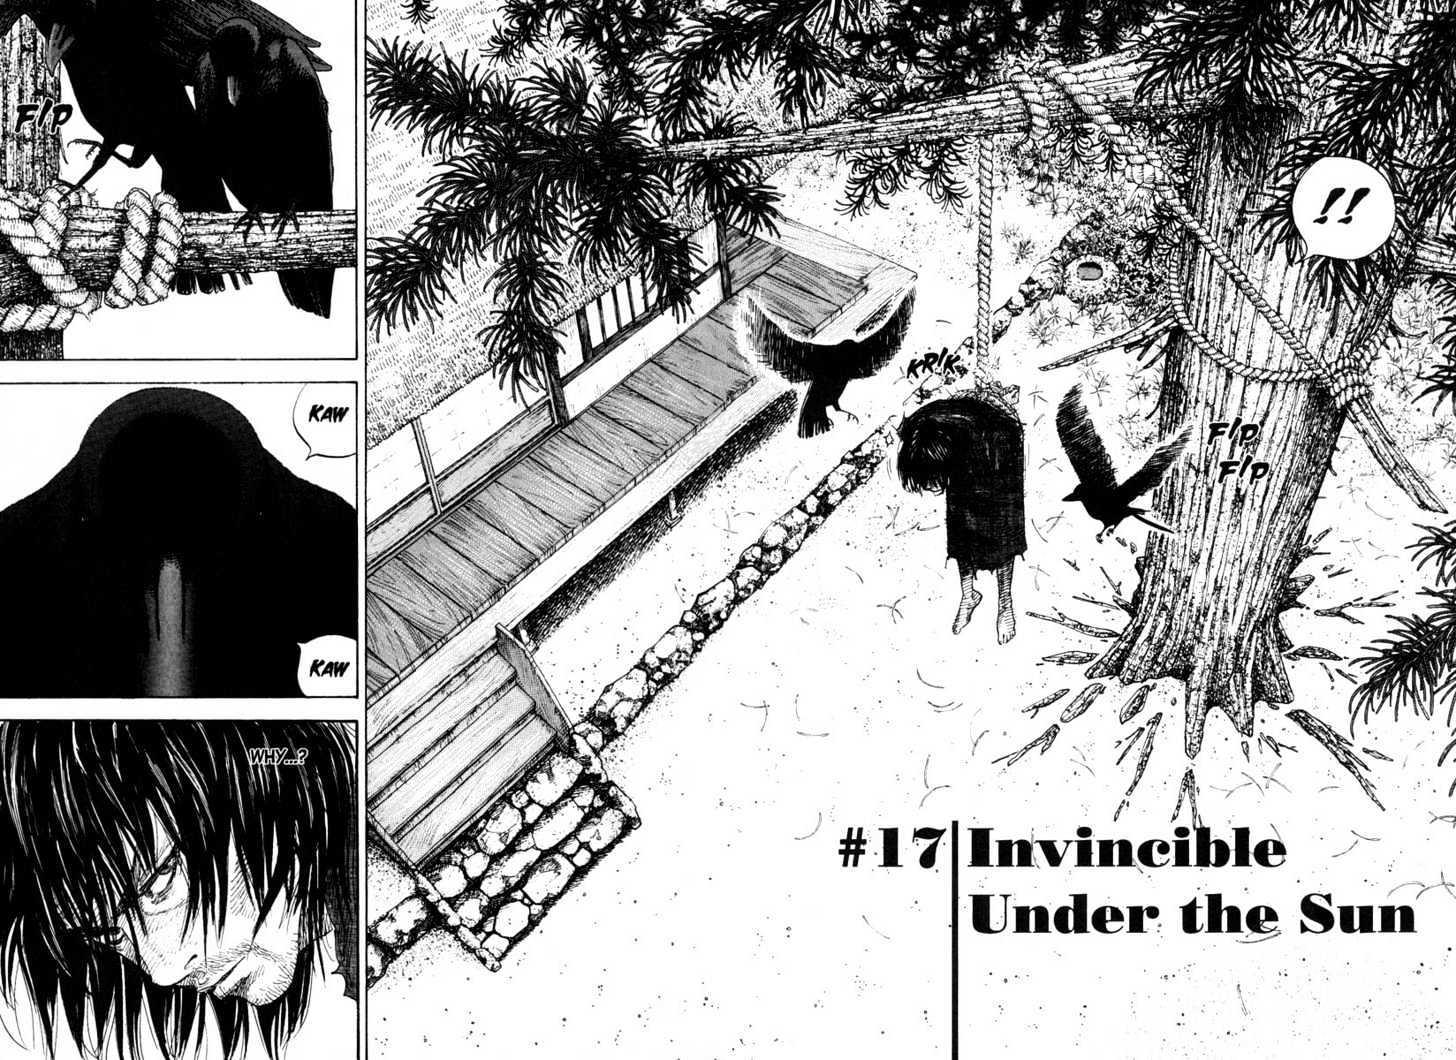 Vagabond Vol.2 Chapter 17 : Invincible Under The Sun page 4 - Mangakakalot